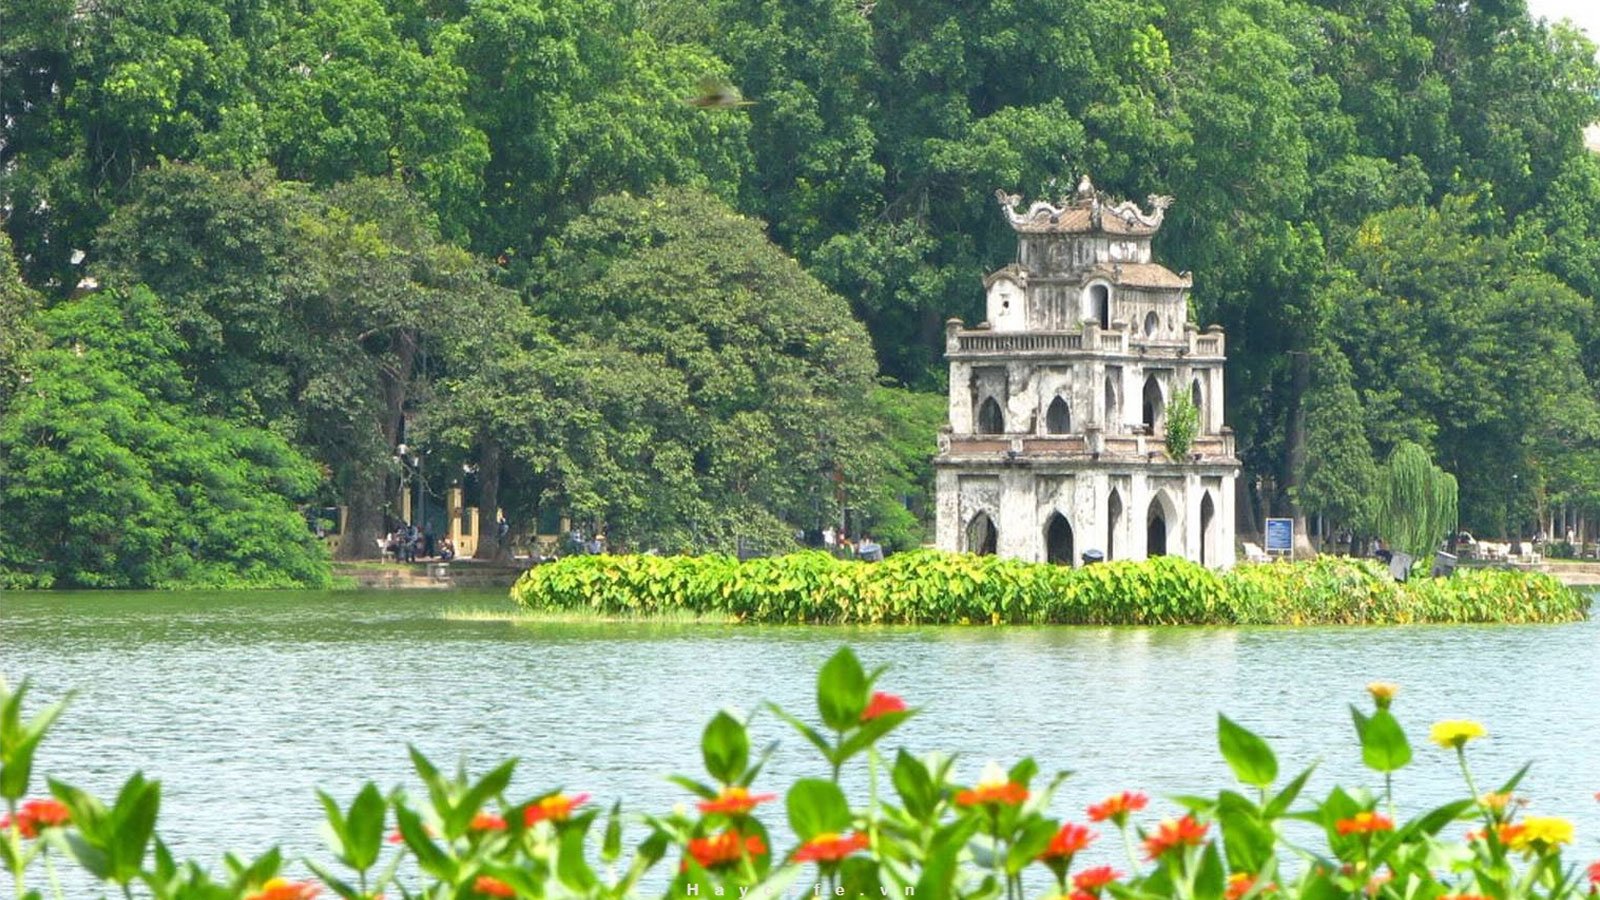 Khám phá hồ Gươm - "Linh hồn" của người dân thủ đô Hà Nội - iVIVU.com